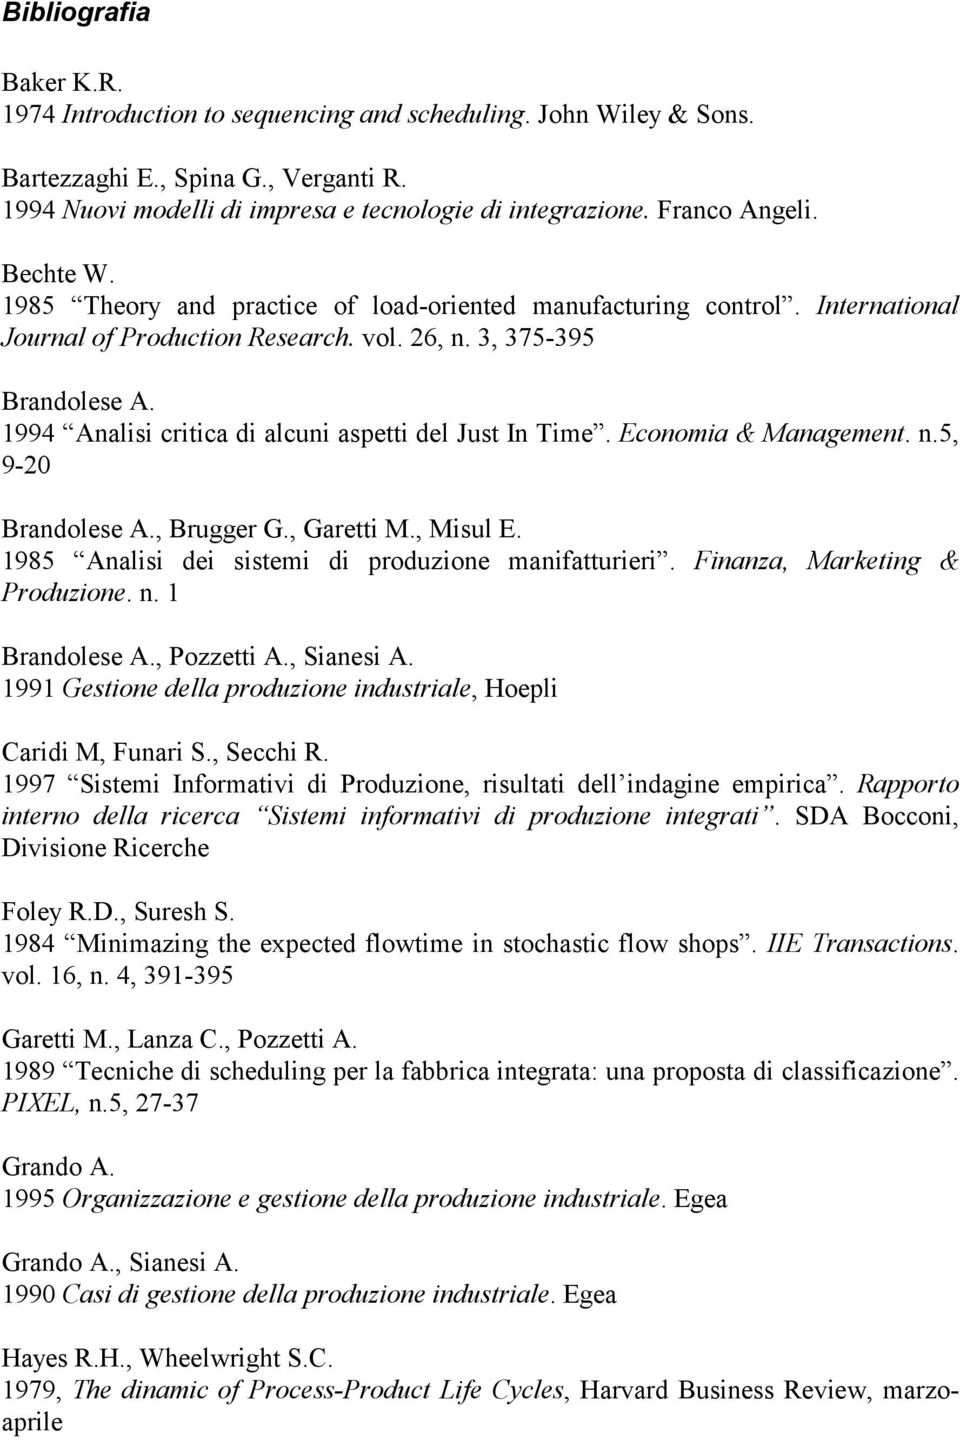 1994 Analisi critica di alcuni aspetti del Just In Time. Economia & Management. n.5, 9-20 Brandolese A., Brugger G., Garetti M., Misul E. 1985 Analisi dei sistemi di produzione manifatturieri.